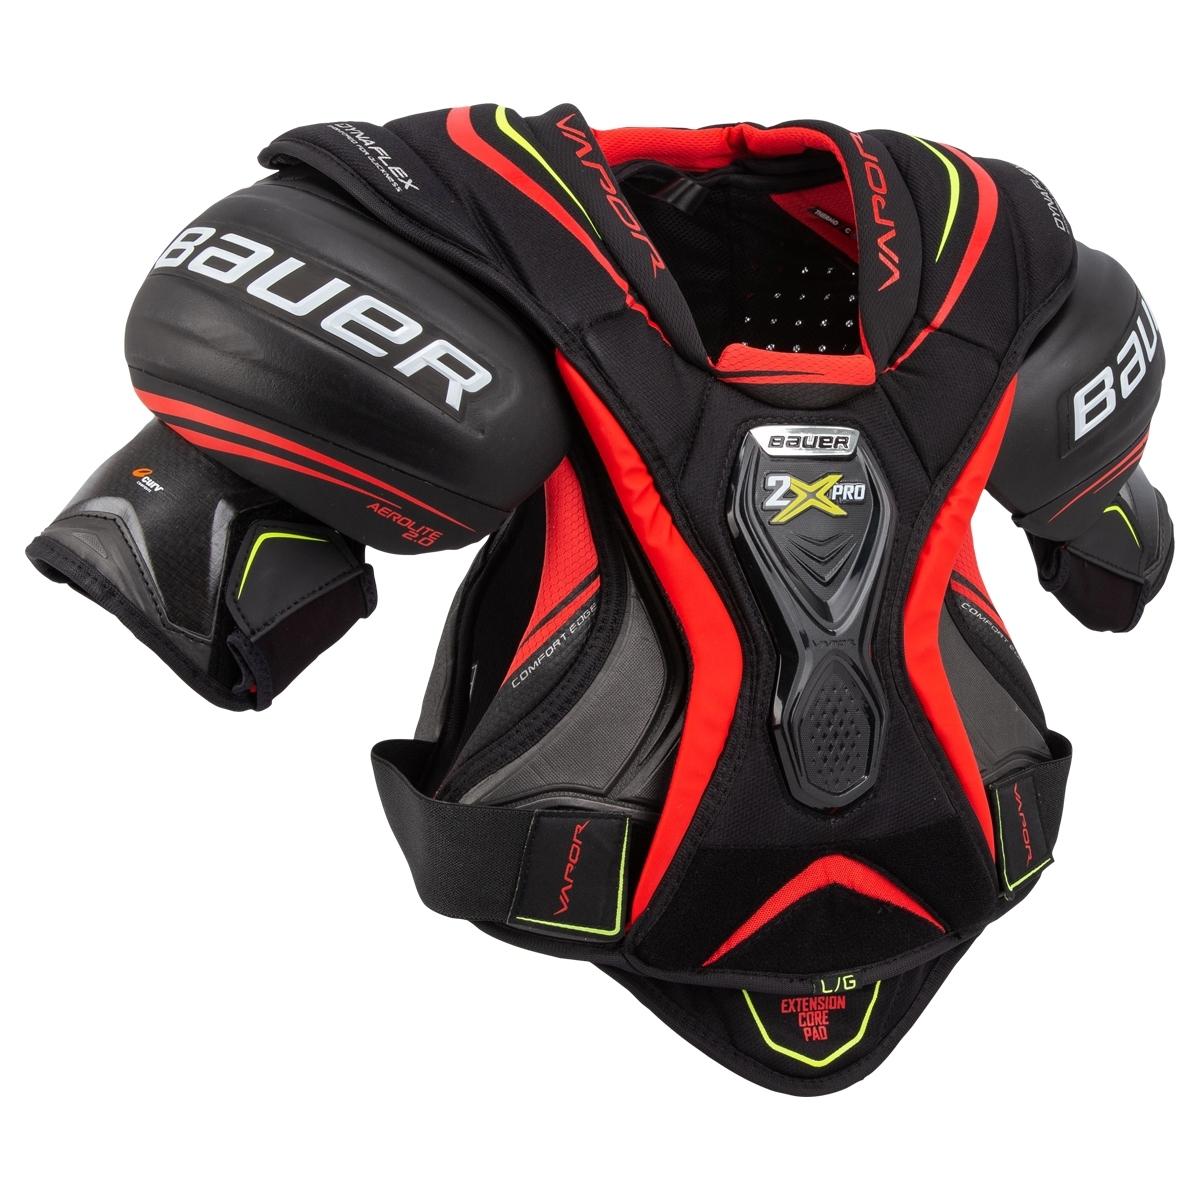 Bauer Vapor 2X Pro Sr. Hockey Shoulder Padsproduct zoom image #2